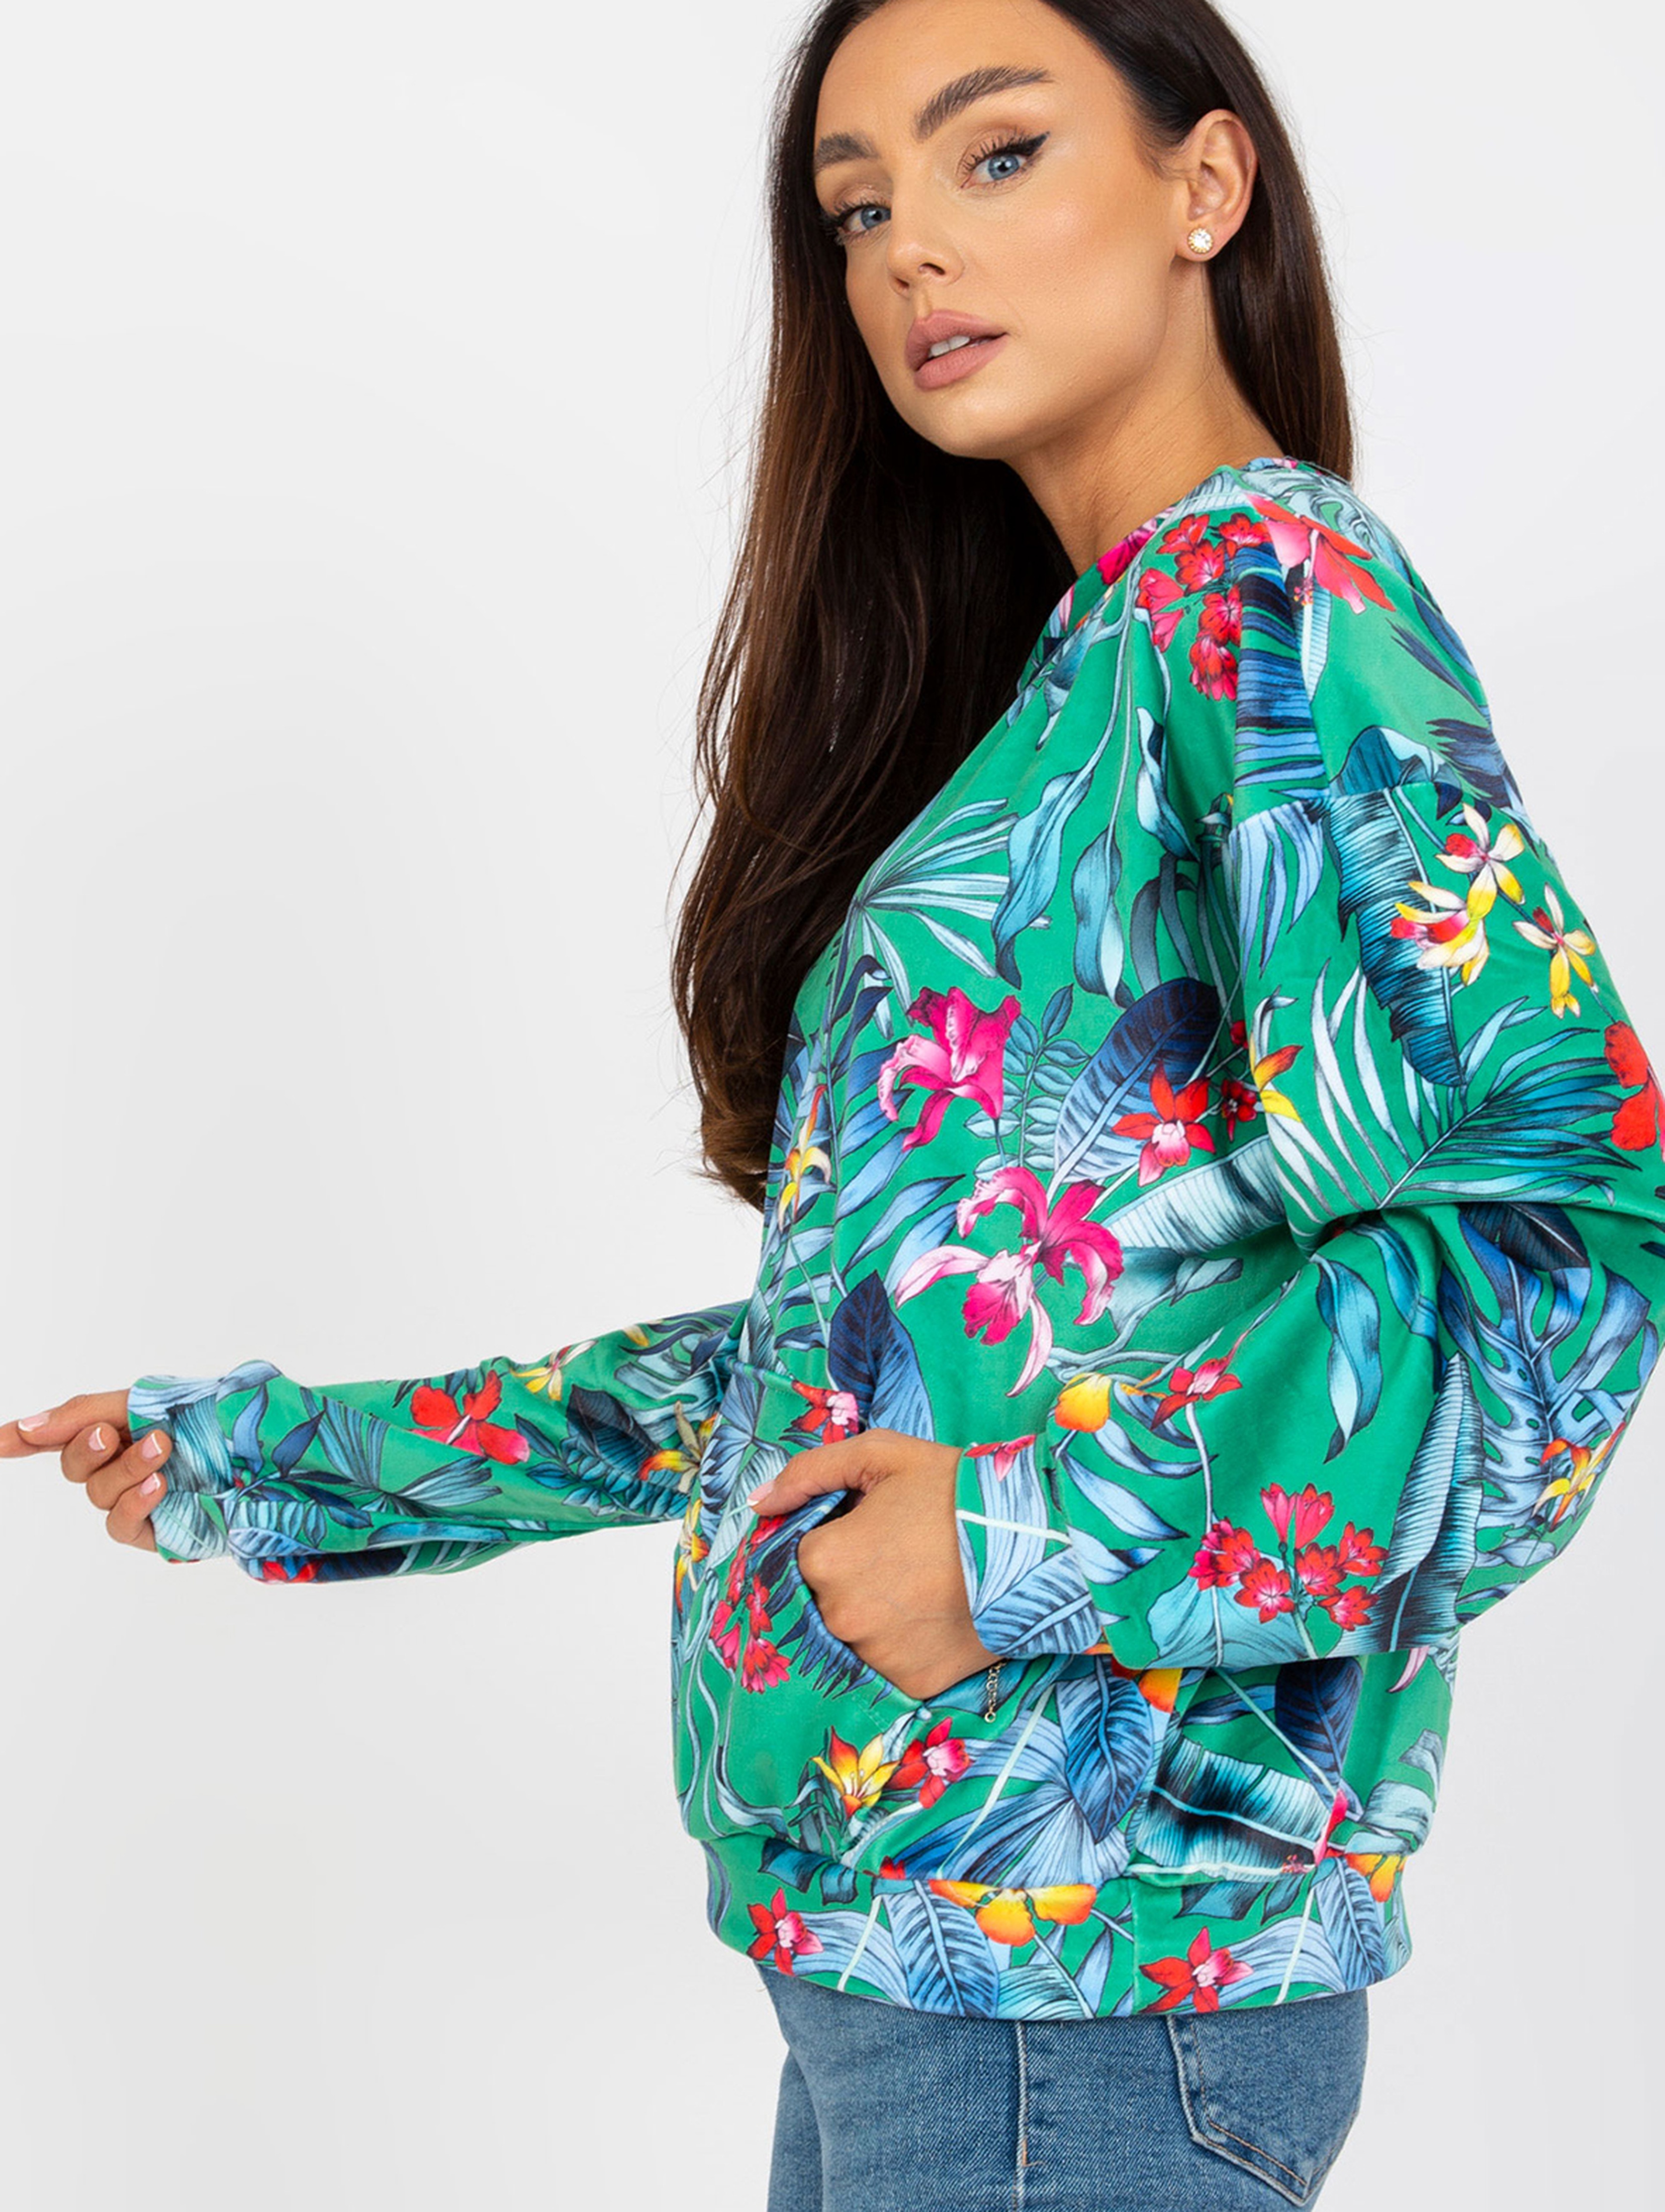 Bluza damska w tropikalne wzory z kieszeniami